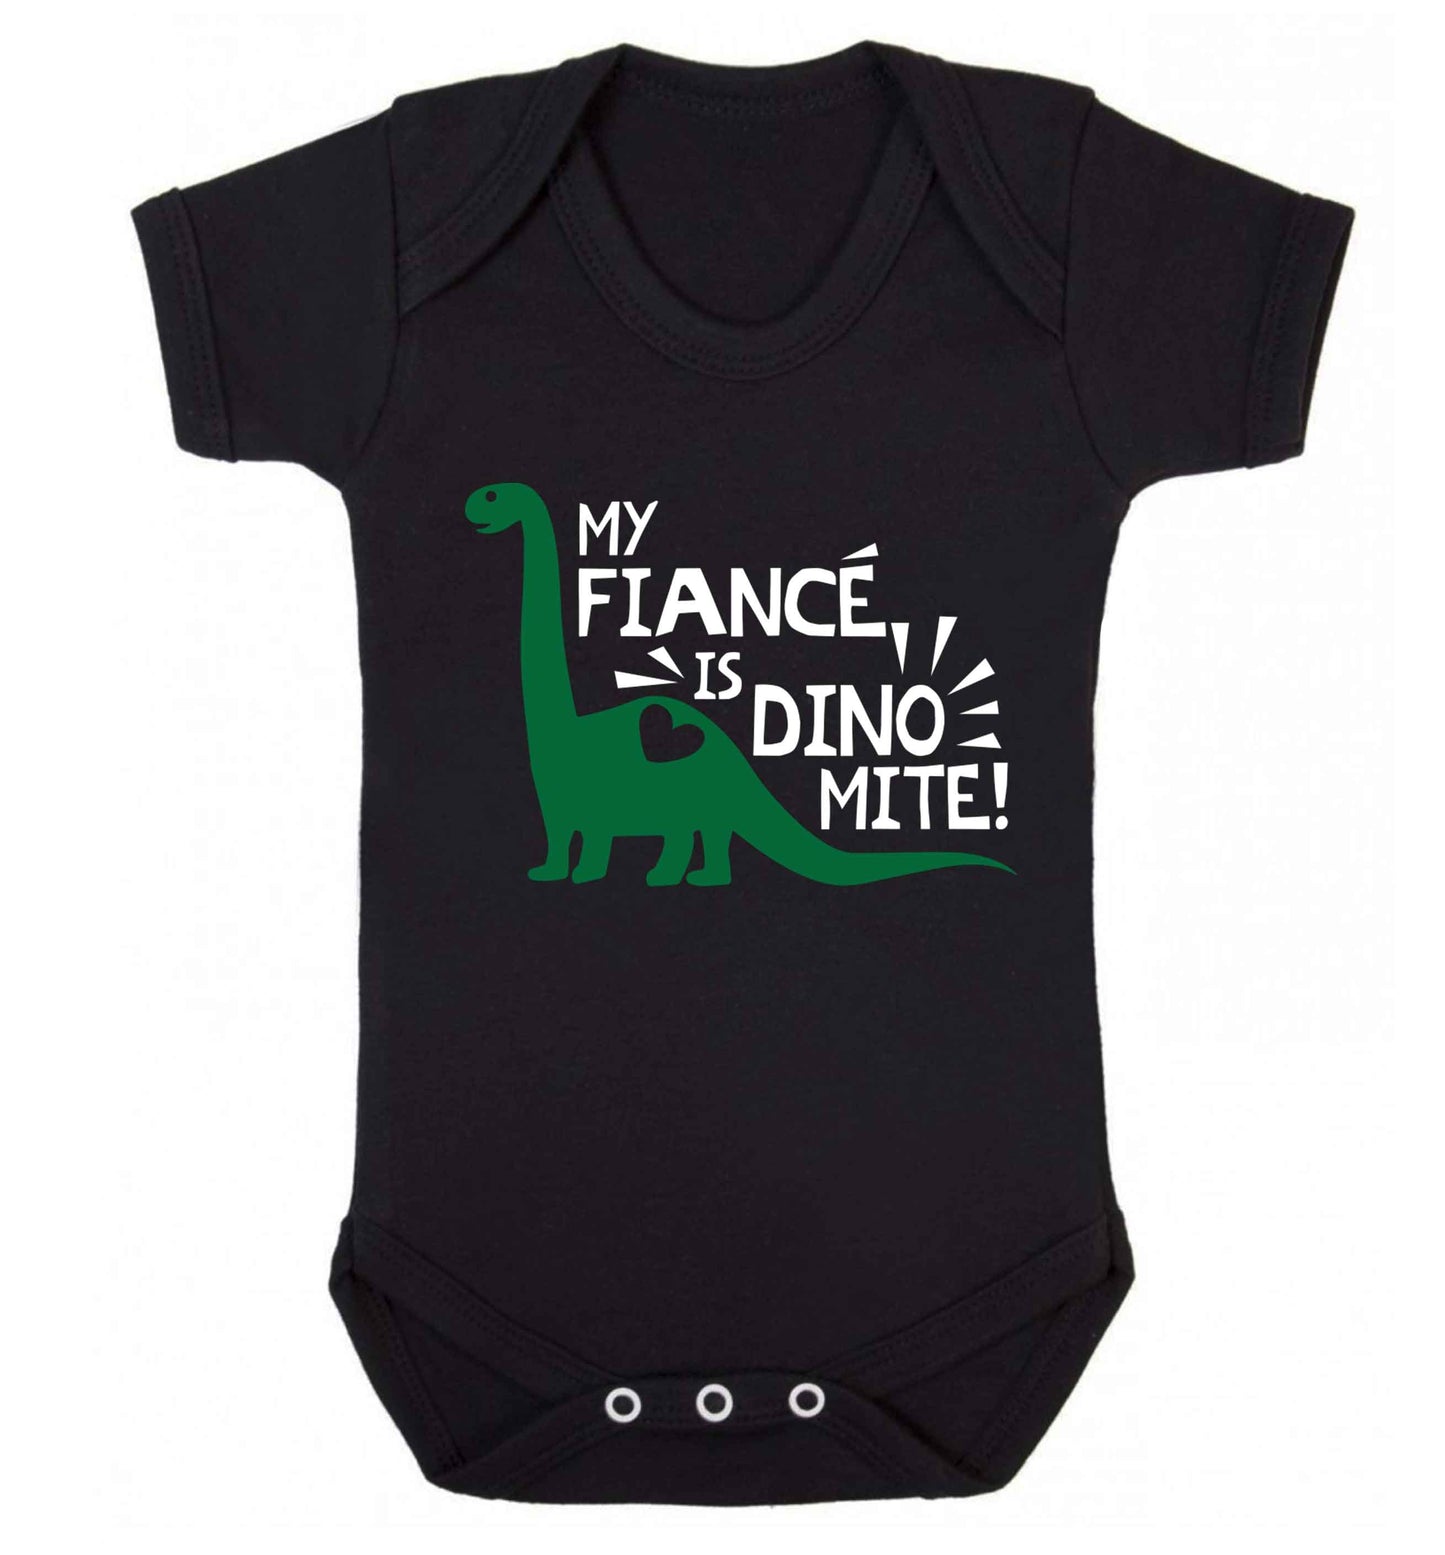 My fiance is dinomite! Baby Vest black 18-24 months